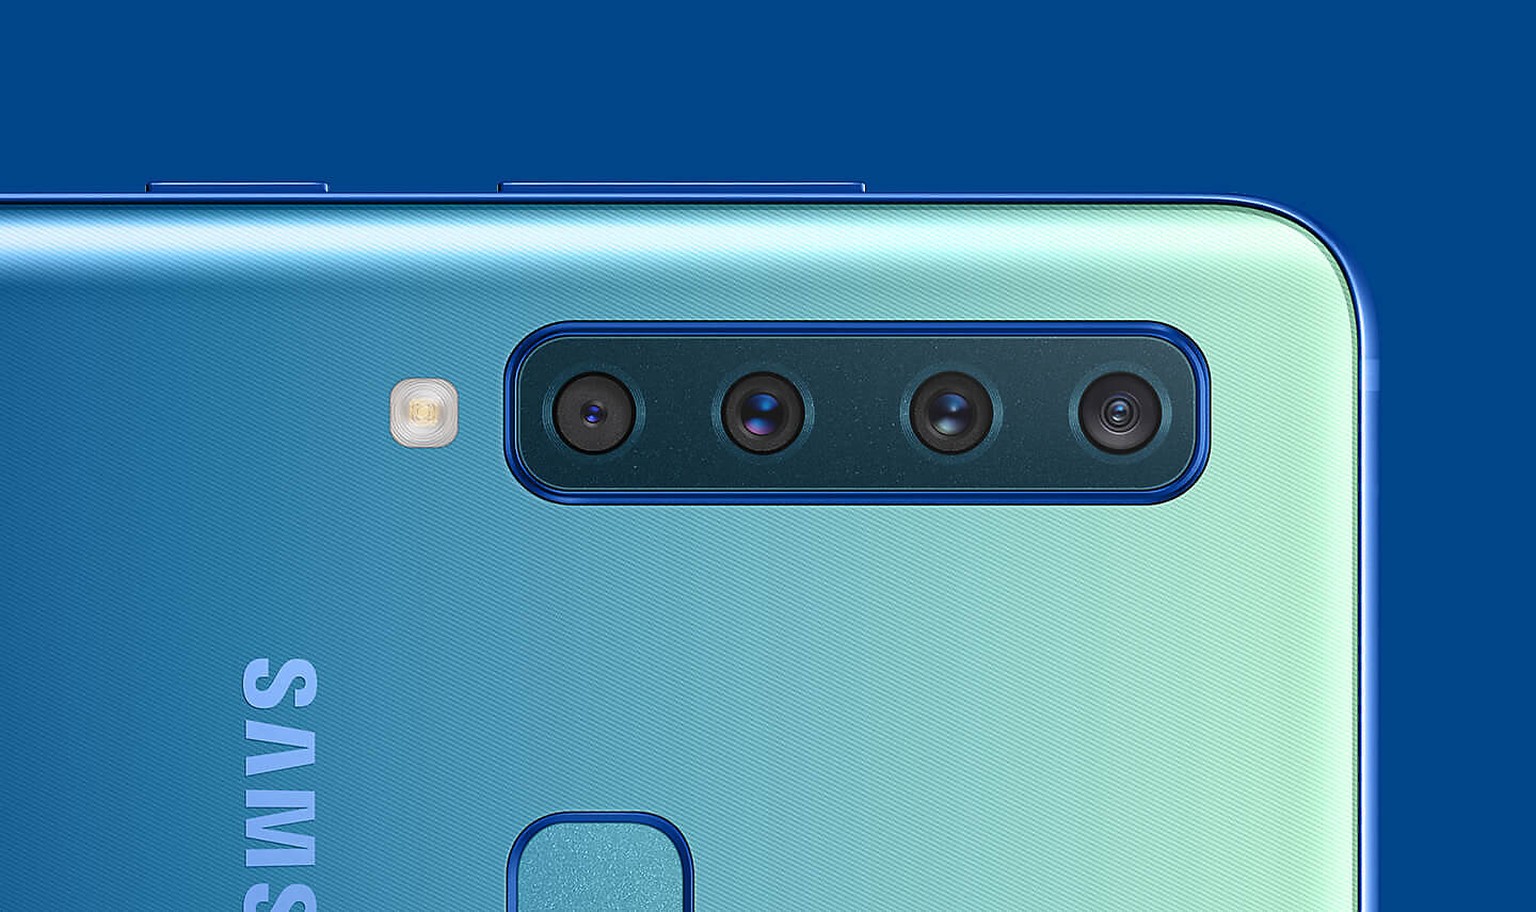 Samsung präsentiert das erste Smartphone mit Vierfach-Kamera auf der Rückseite.